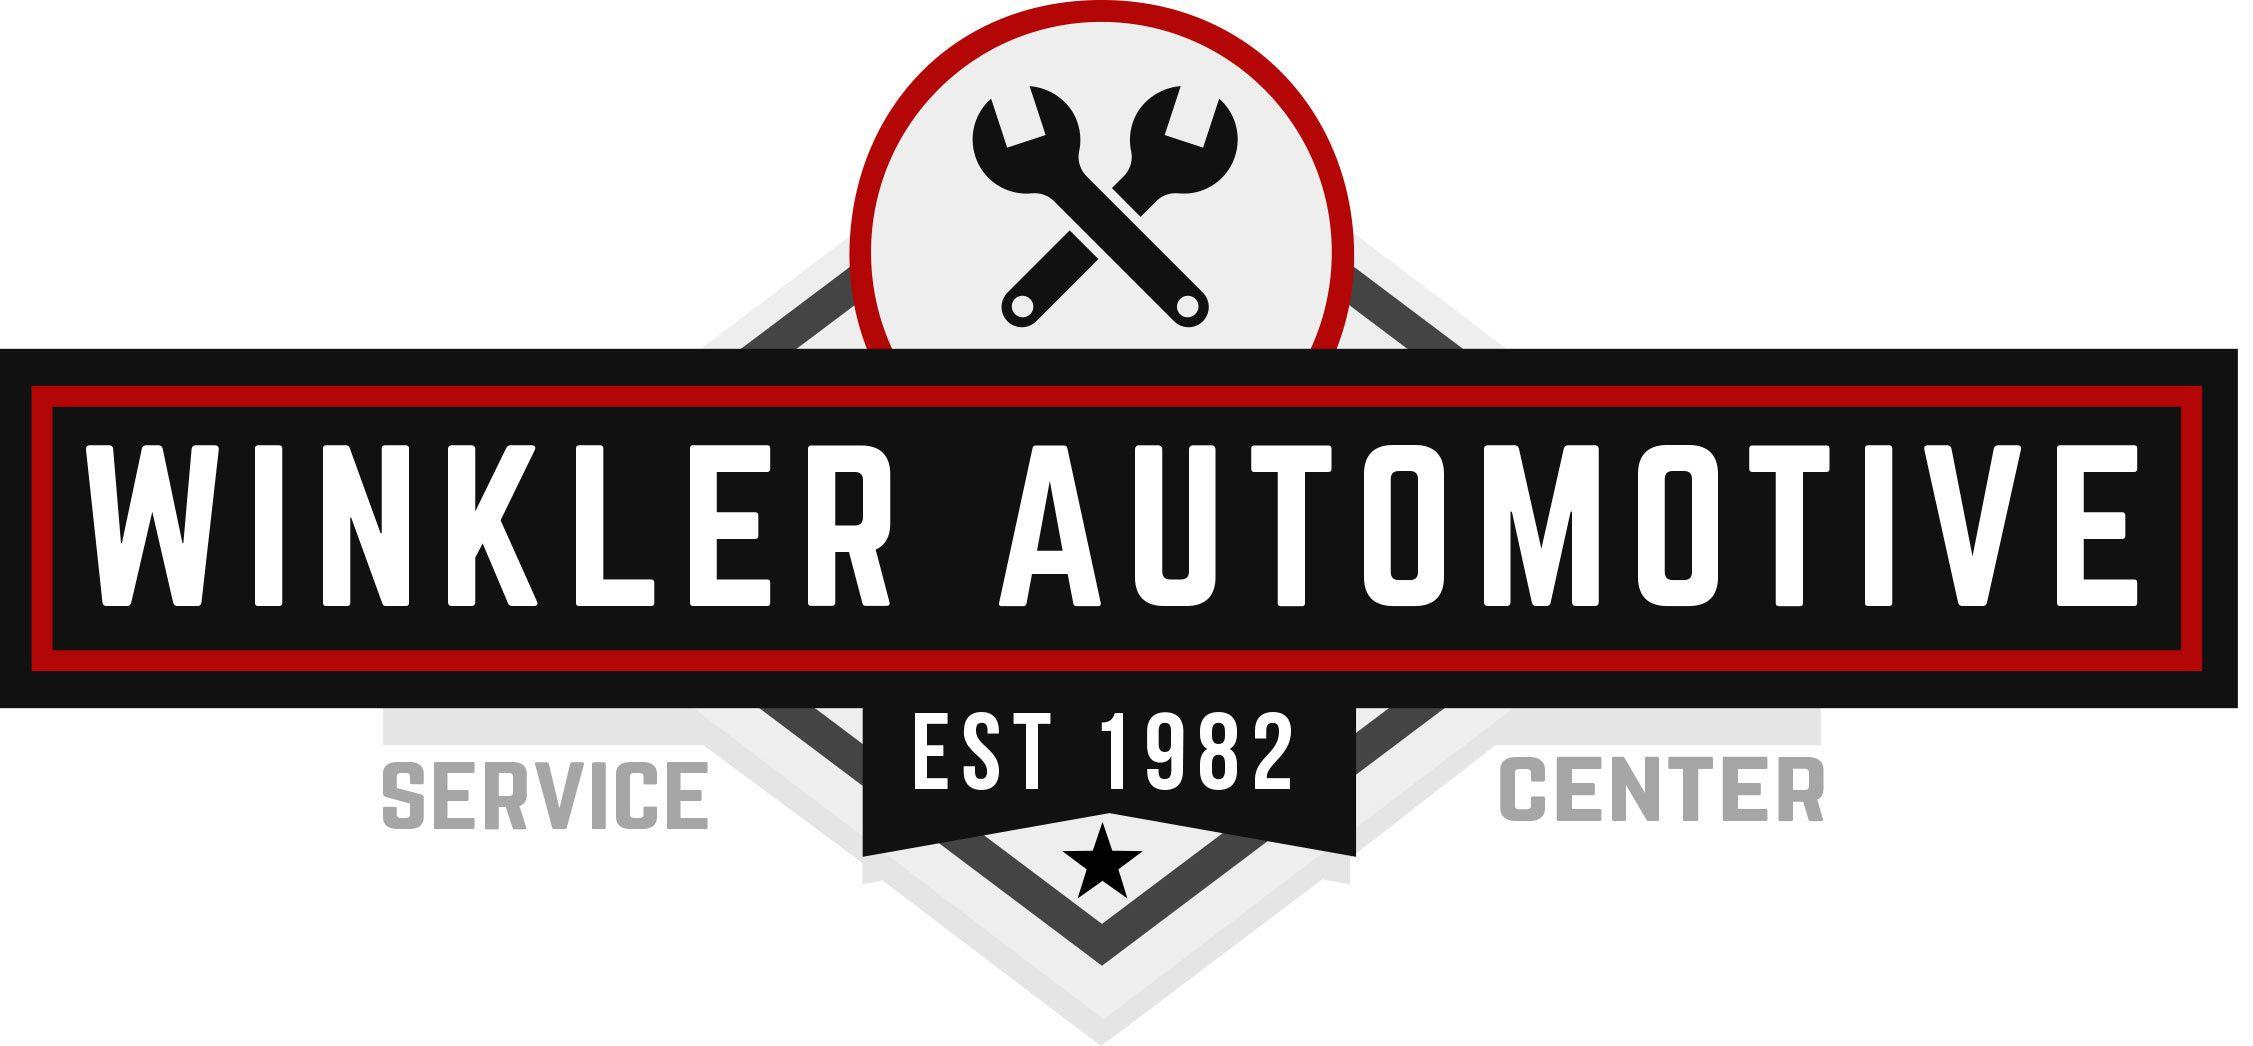 Auto Center Logo - Services